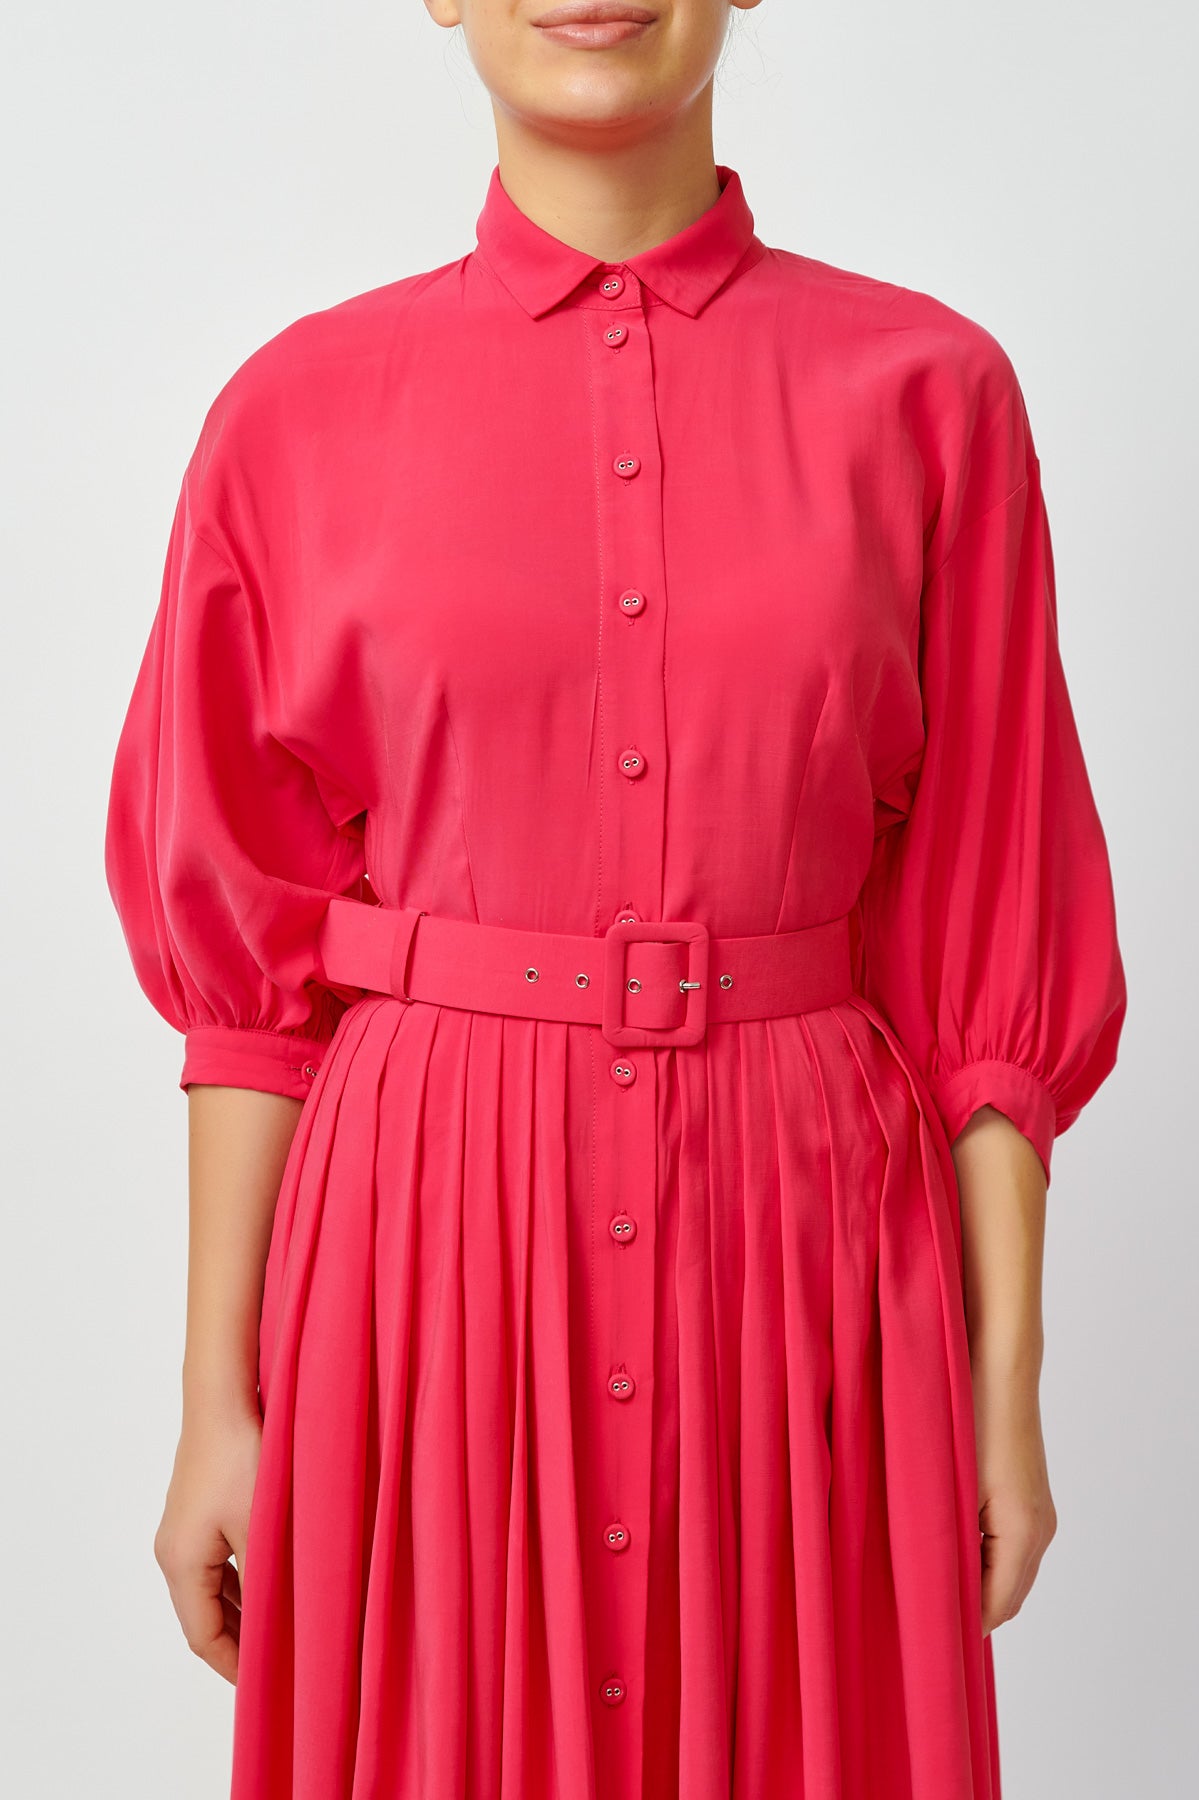 Hot pink shirt dress